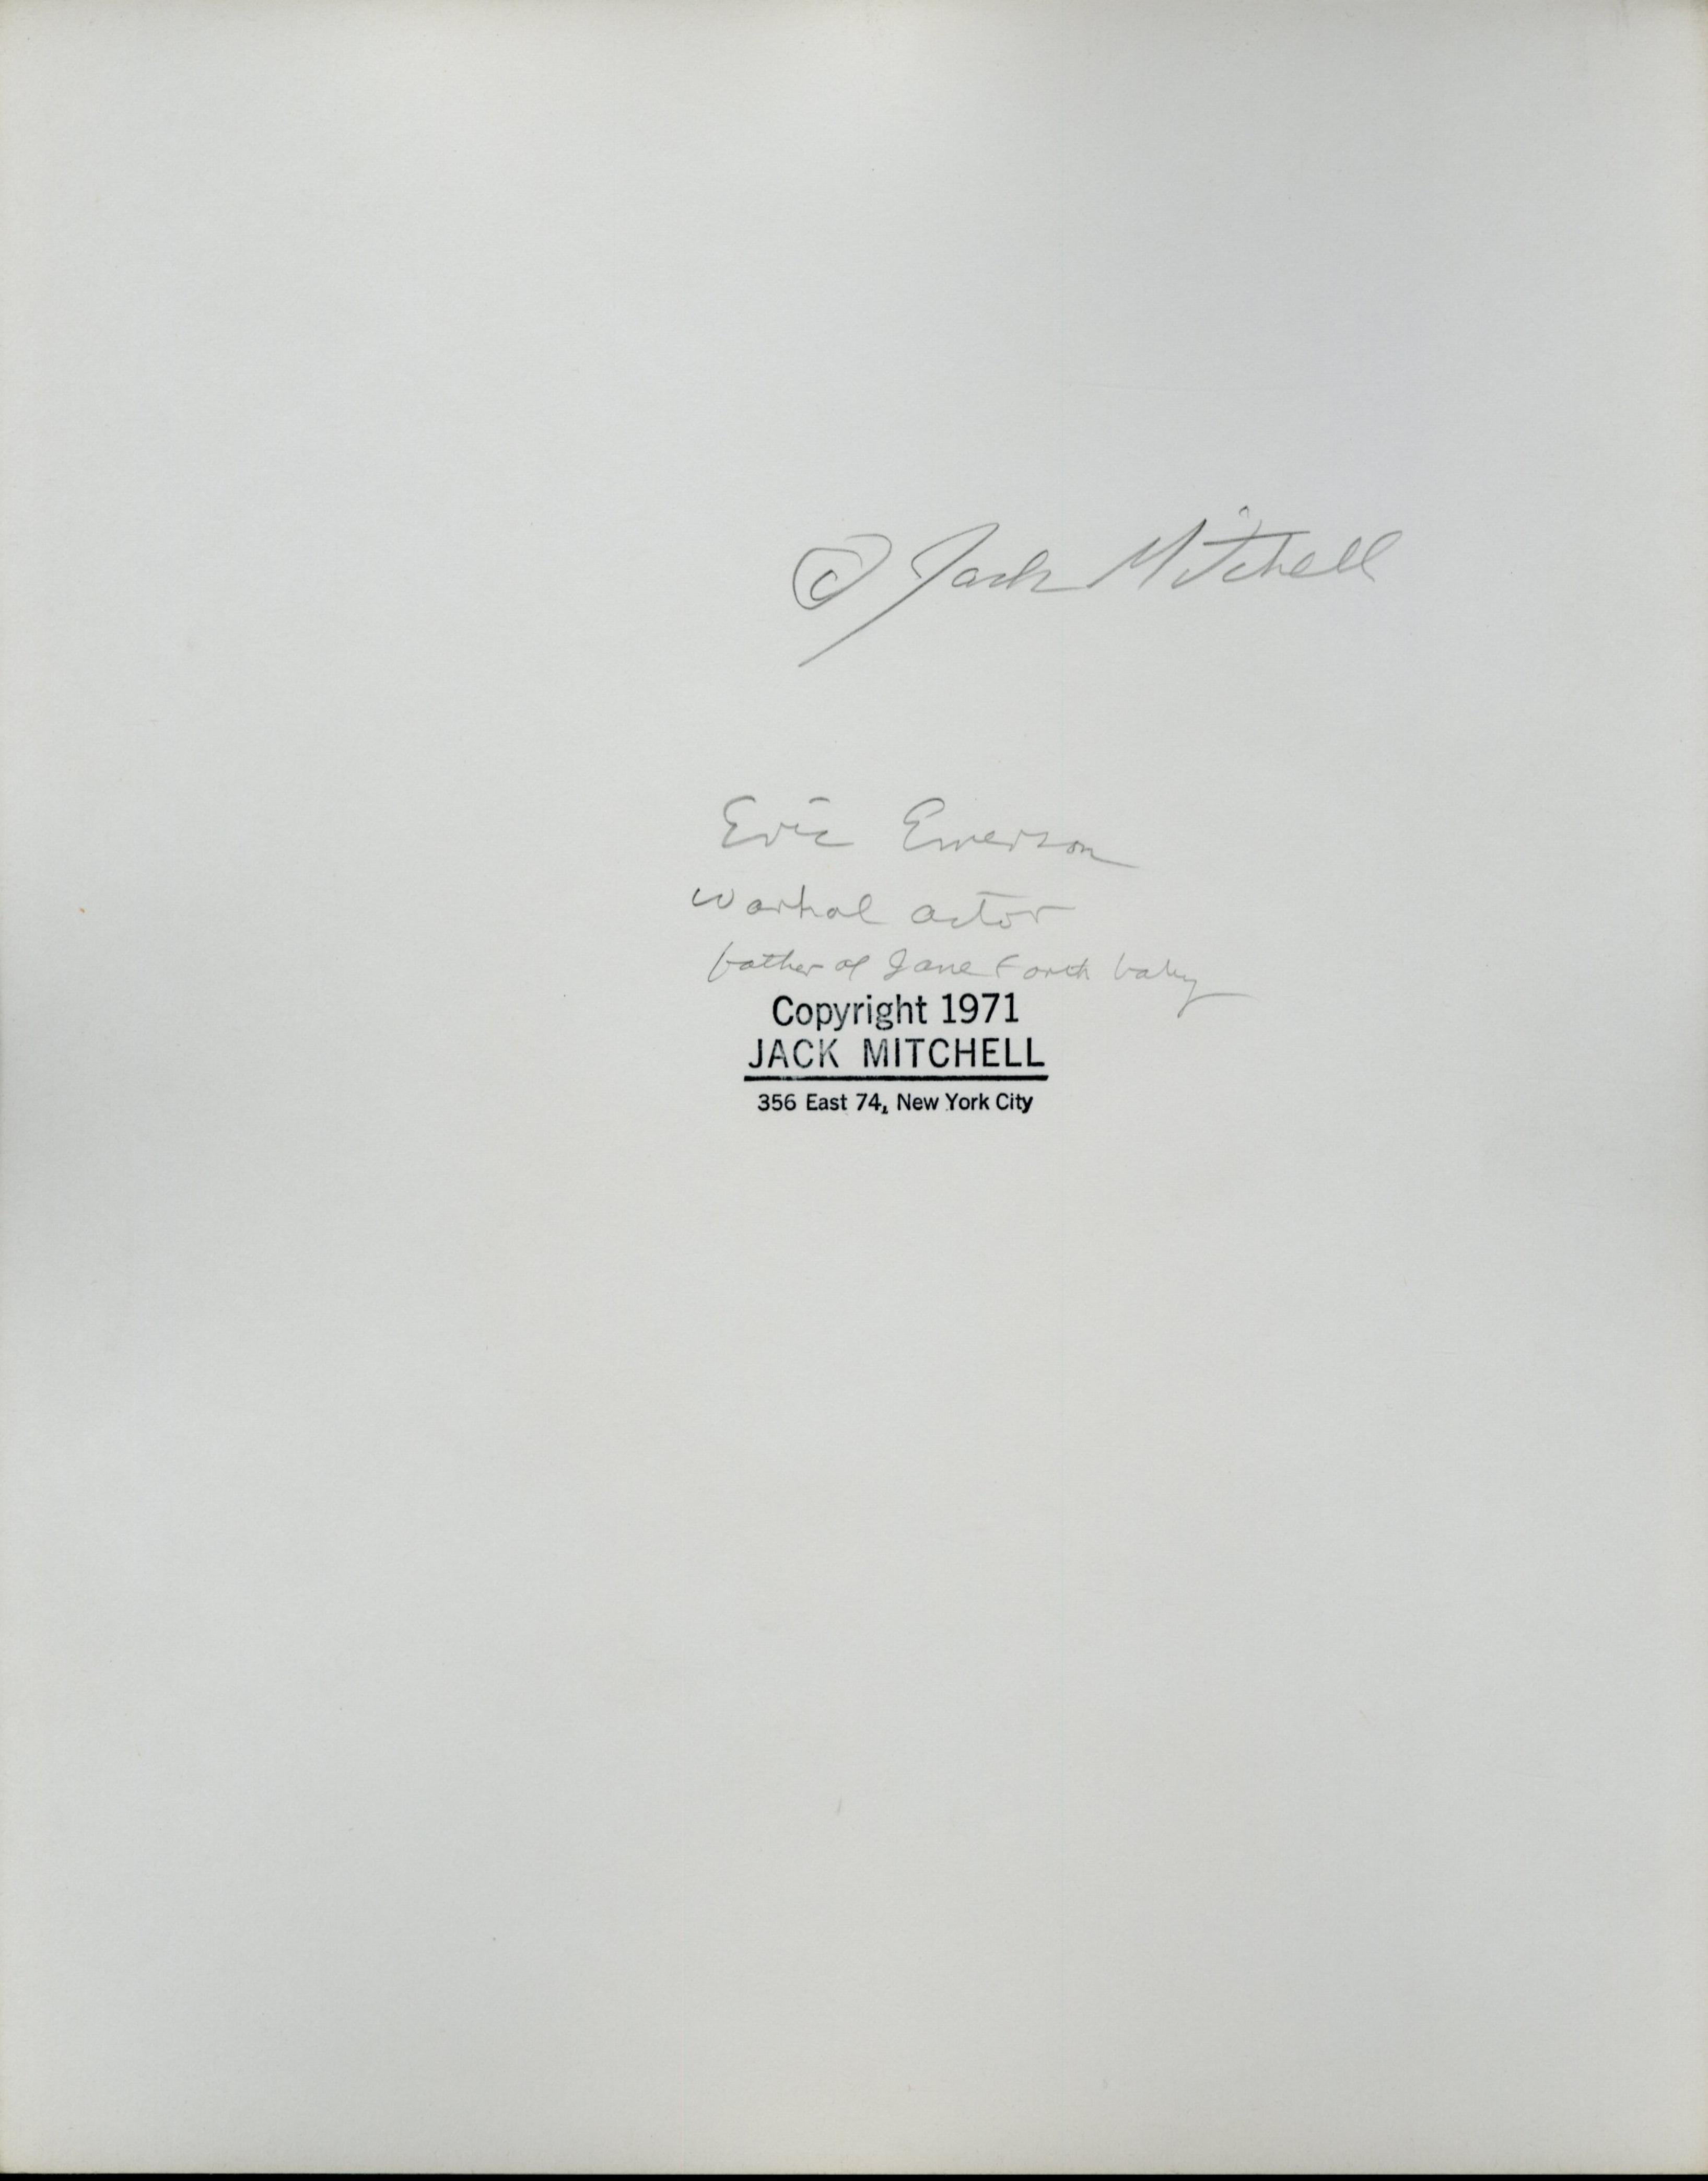 Warhol-Superstar Eric Emerson, fotografiert für die Zeitschrift „After Dark“, signiert – Photograph von Jack Mitchell